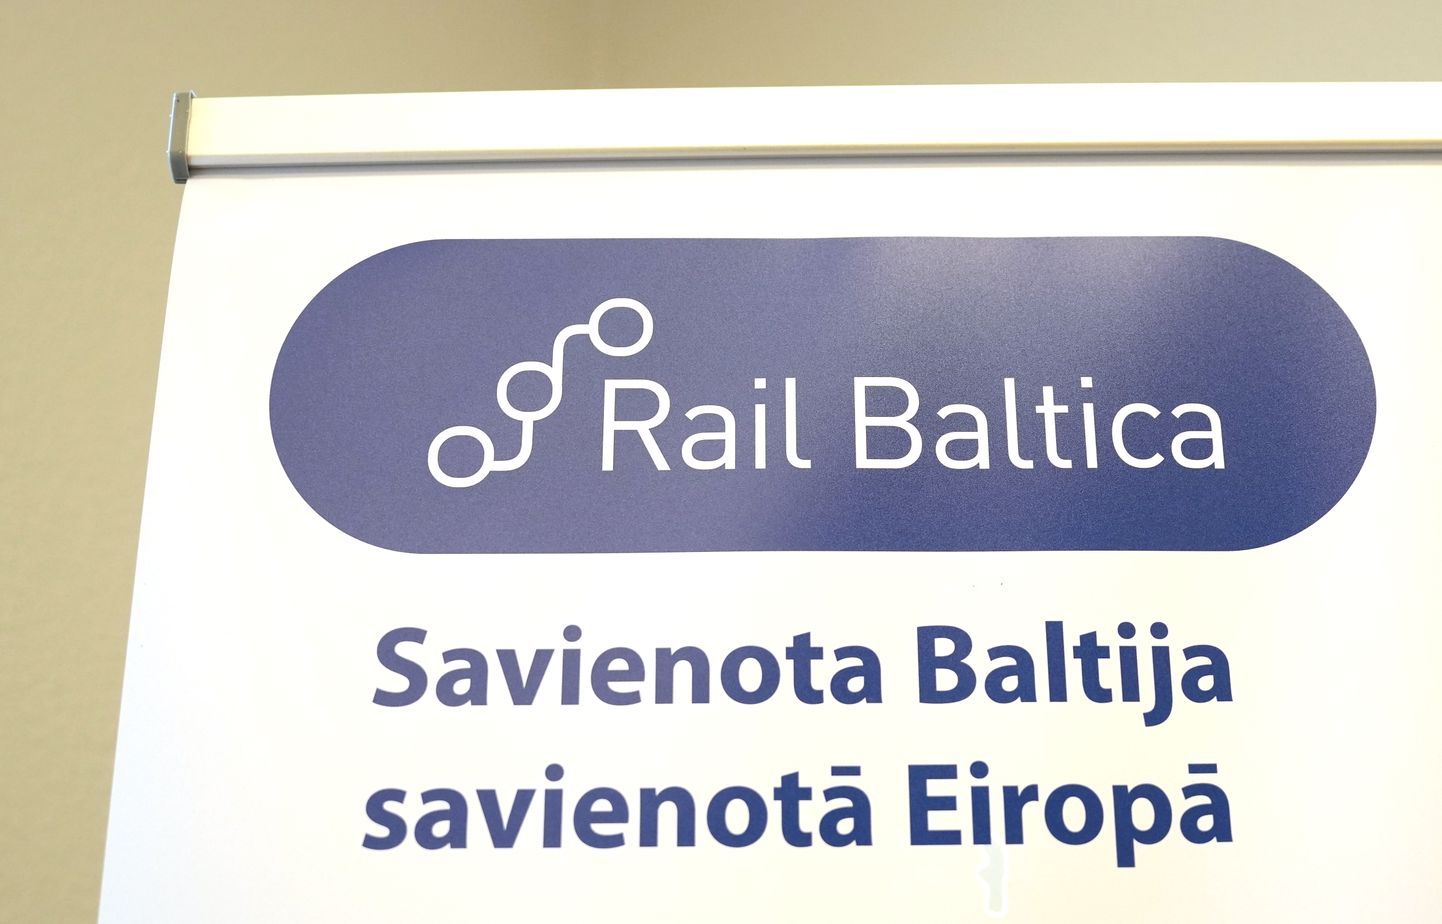 "Rail Baltica" logo.